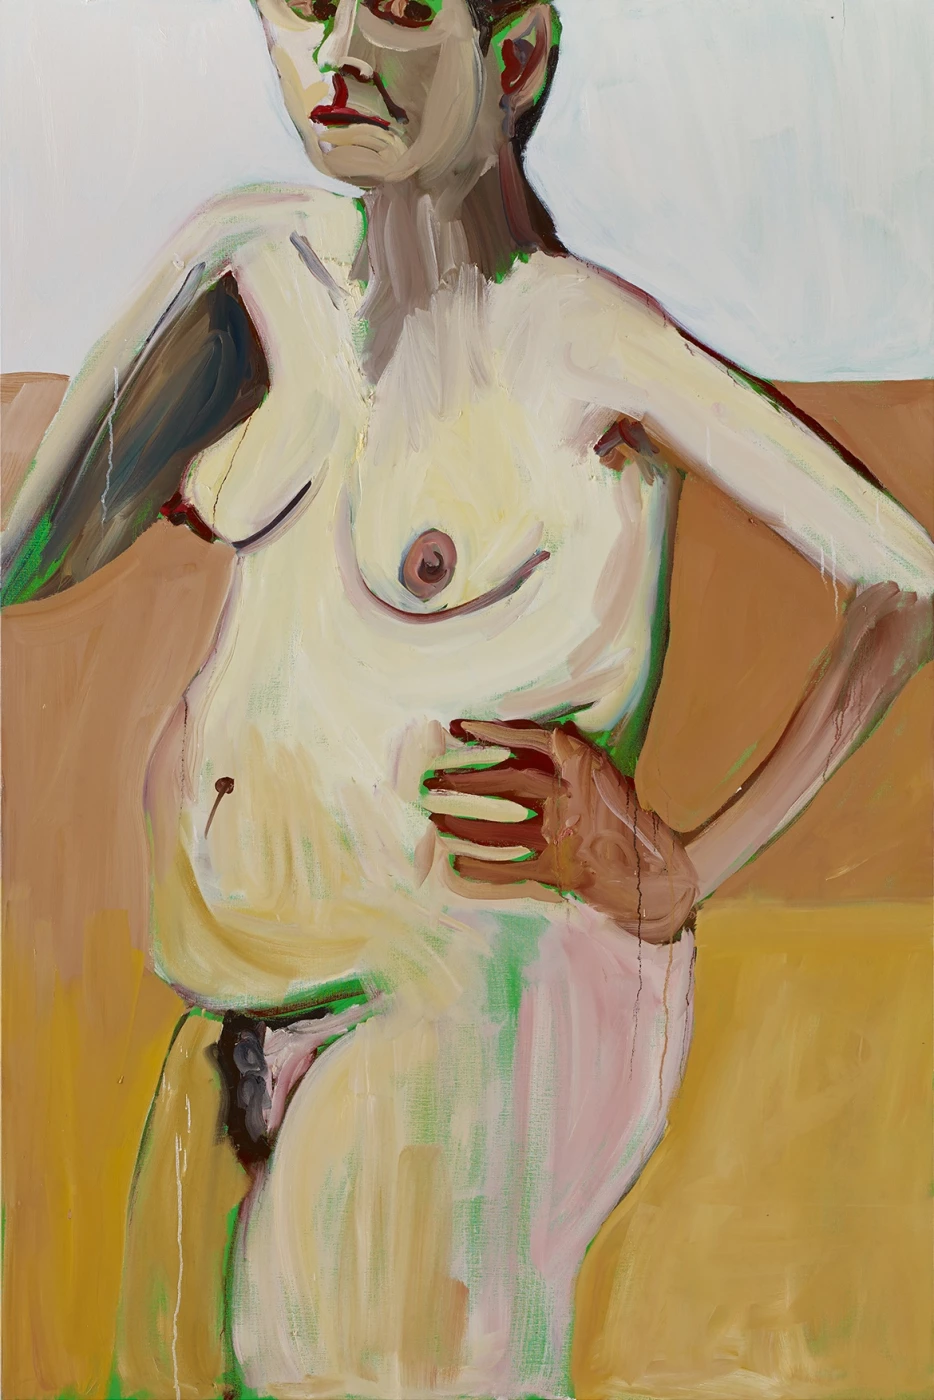 Self Portrait with Hand on Hip, 2014. Шанталь Джофф (иногда Шанталь Жоффе, англ. Chantal Joffe) - британская художница. Современная живопись. Contemporary art, paintings